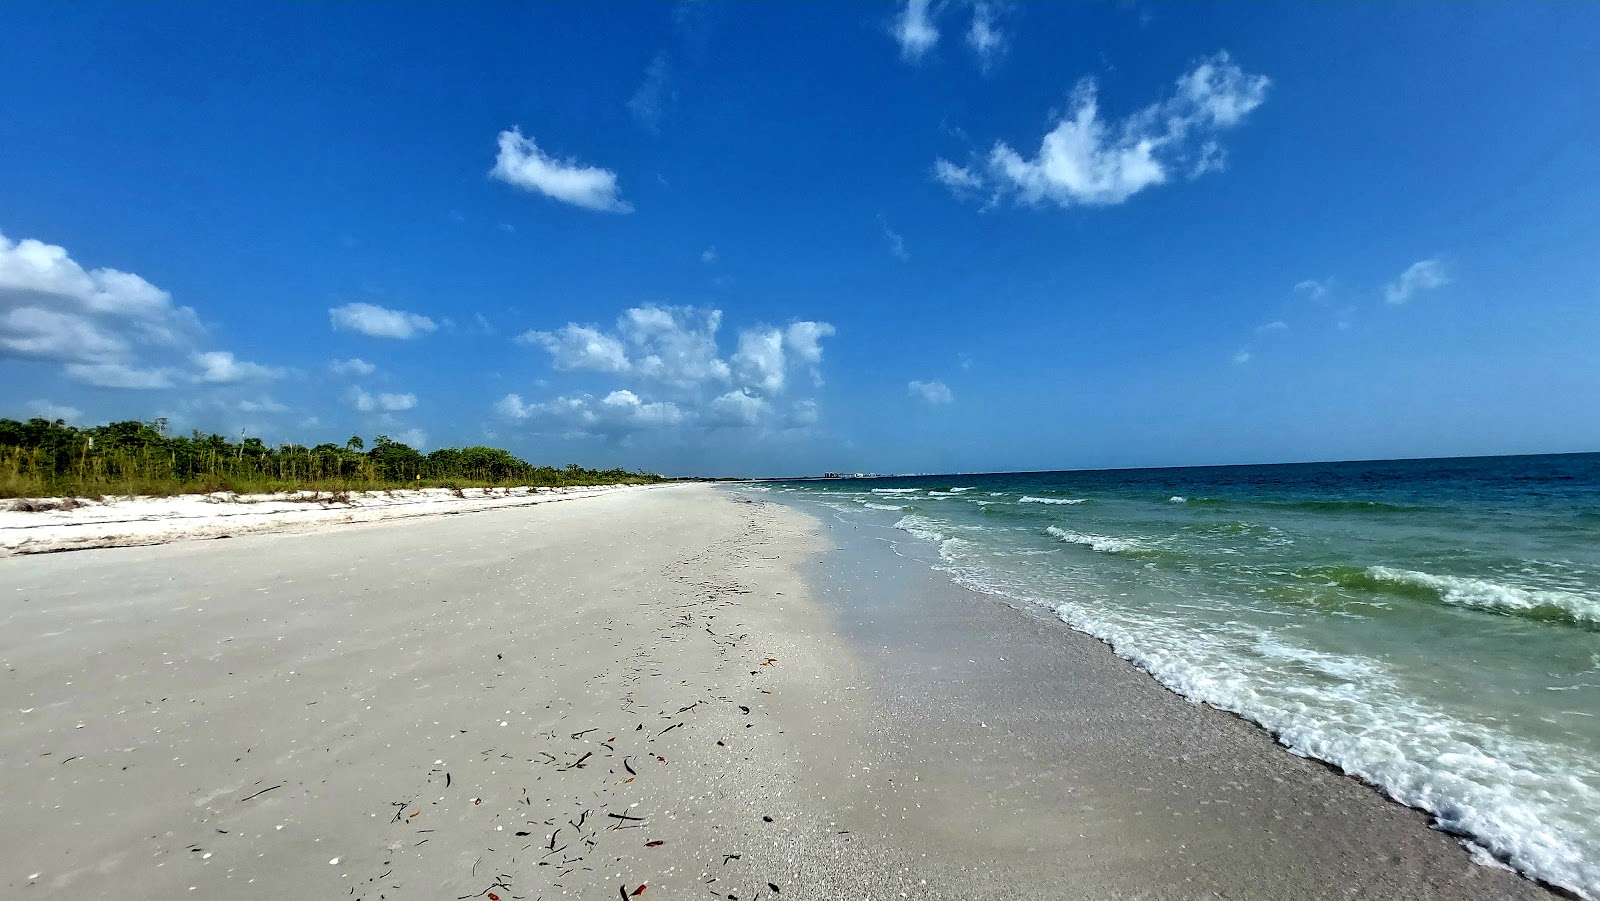 Zdjęcie Bonita beach - popularne miejsce wśród znawców relaksu